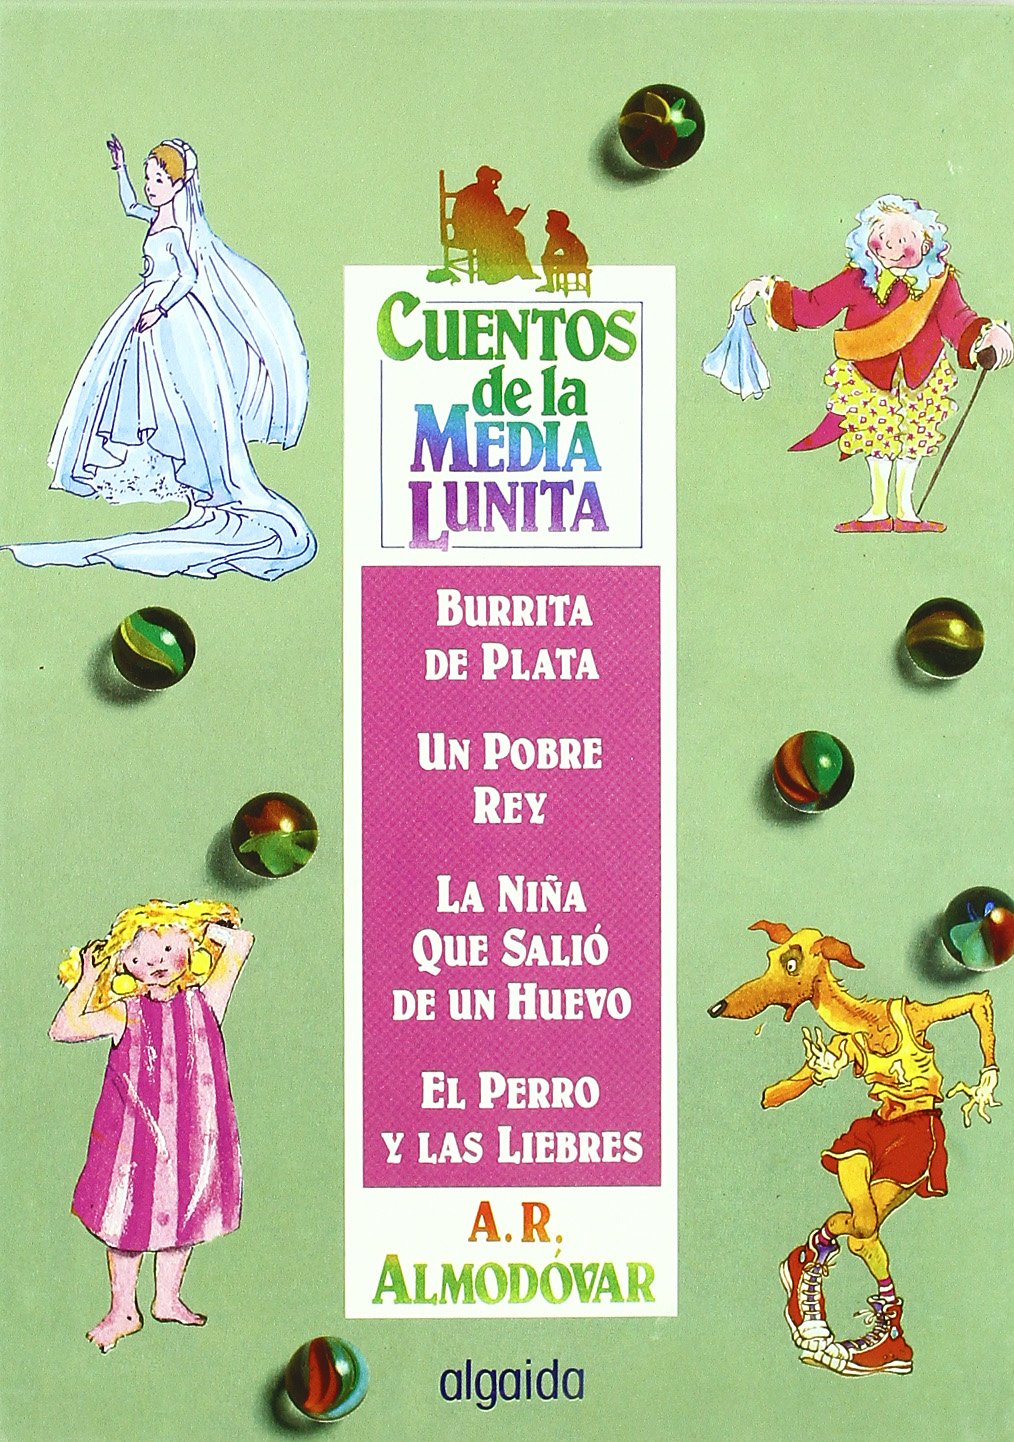 Libros: Cuentos de la media lunita: Burrita de Plata, Un Pobre Rey, La niña que salió de un Huevo, El Perro y Las Liebres por Antonio Rodríguez Almodóvar